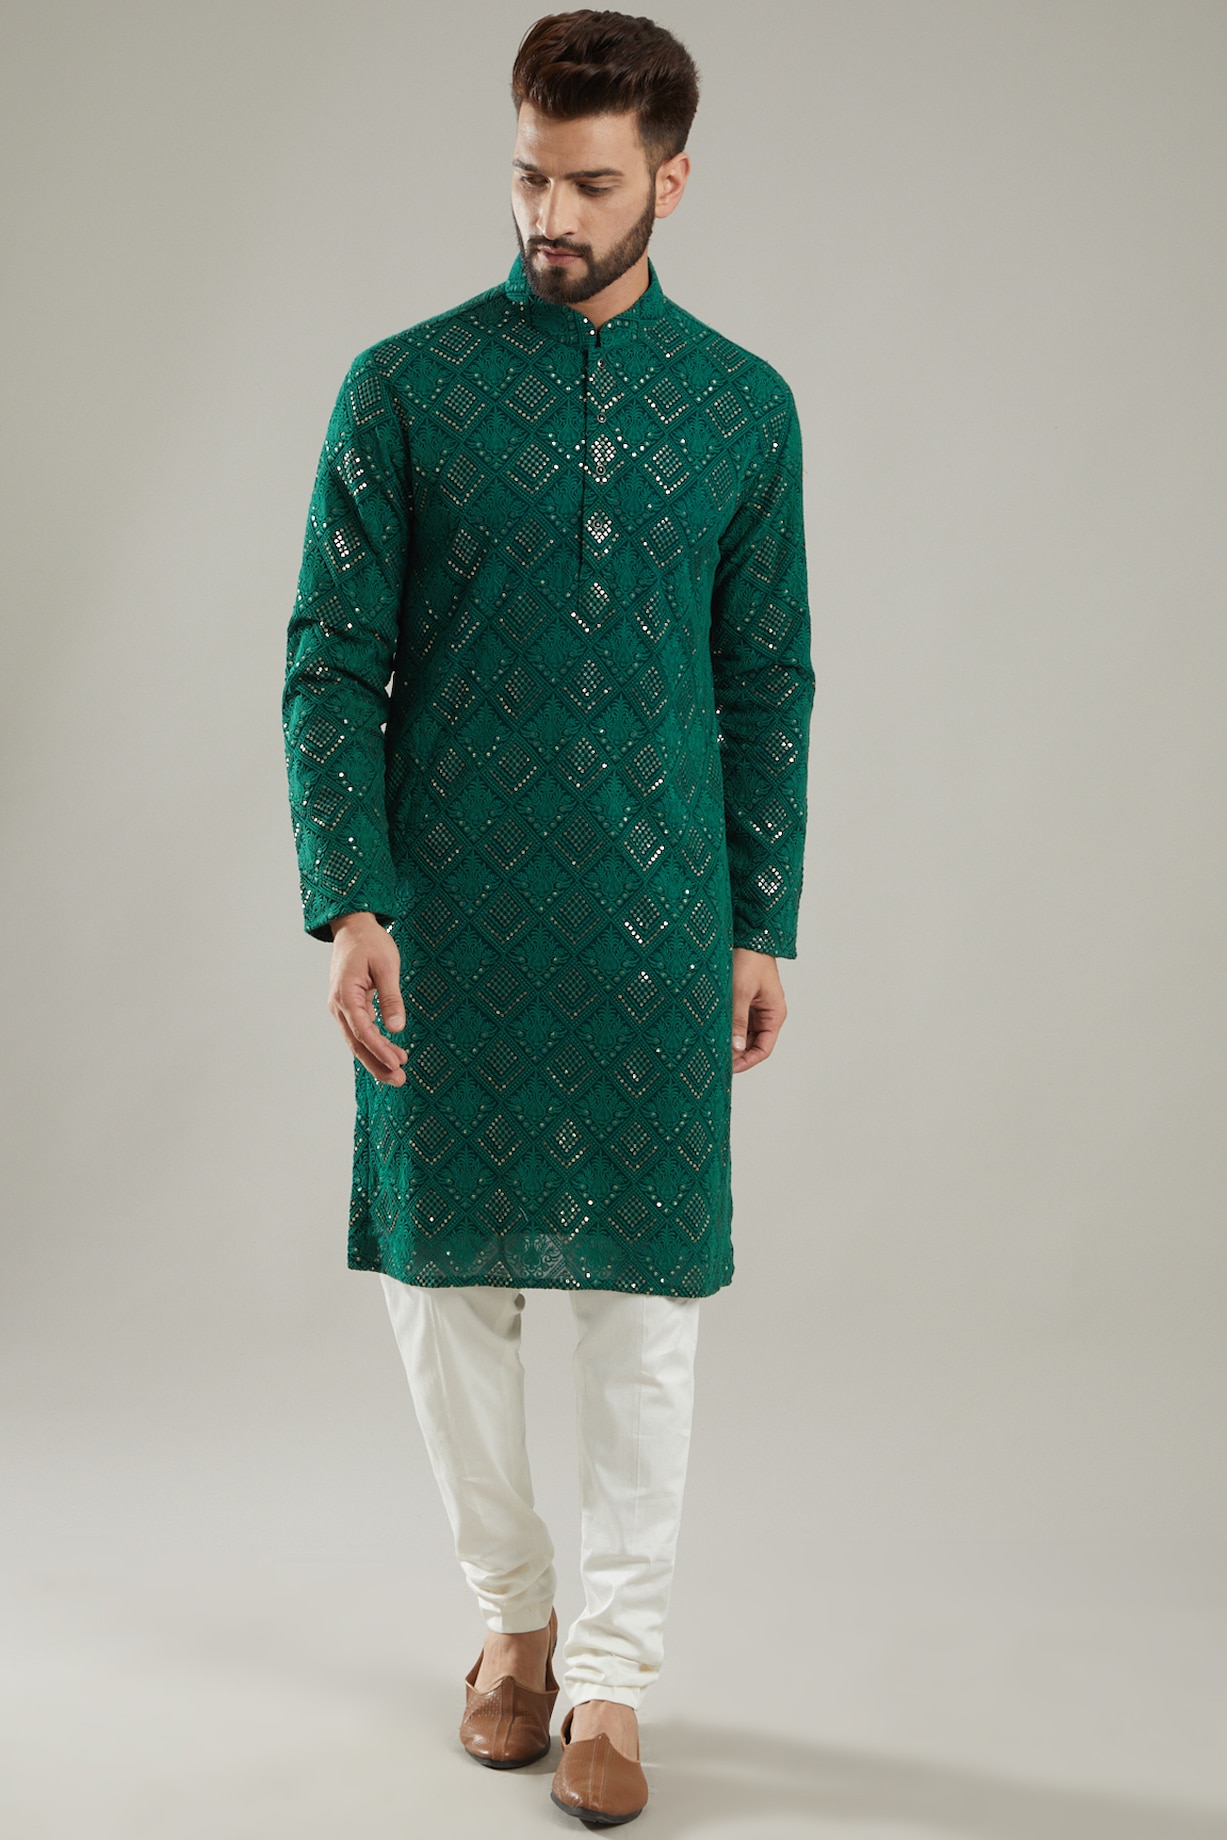 Buy Kasbah Clothing Emerald Green Embroidered Kurta at Pernia ...